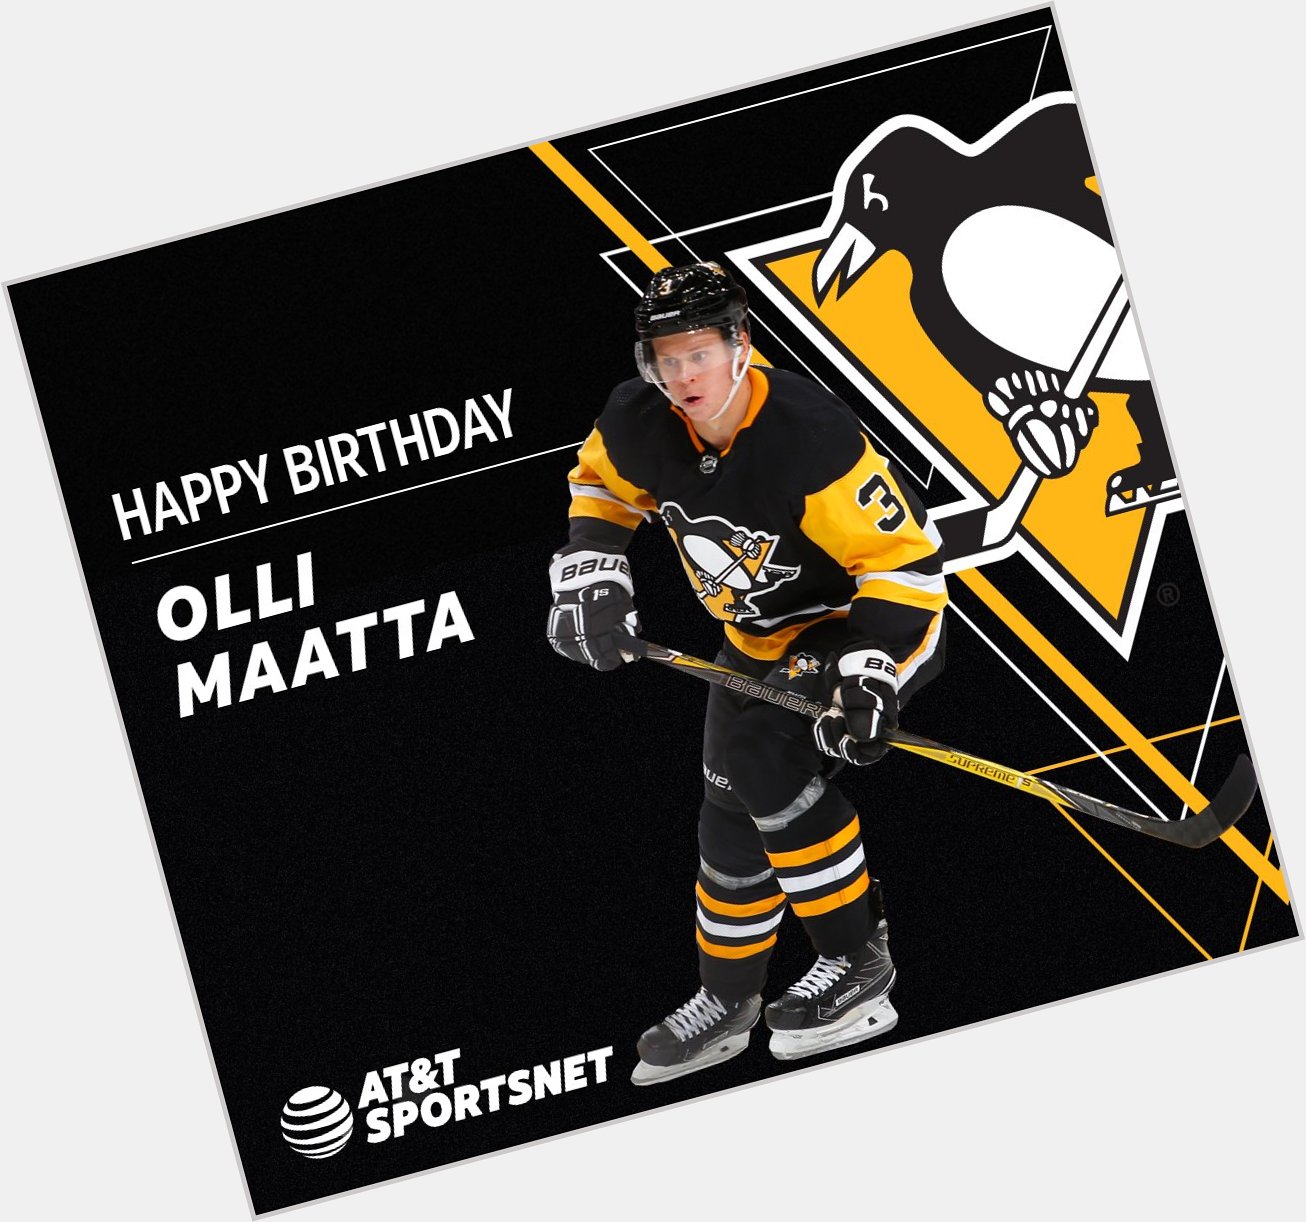 Happy Birthday to Olli Maatta! 